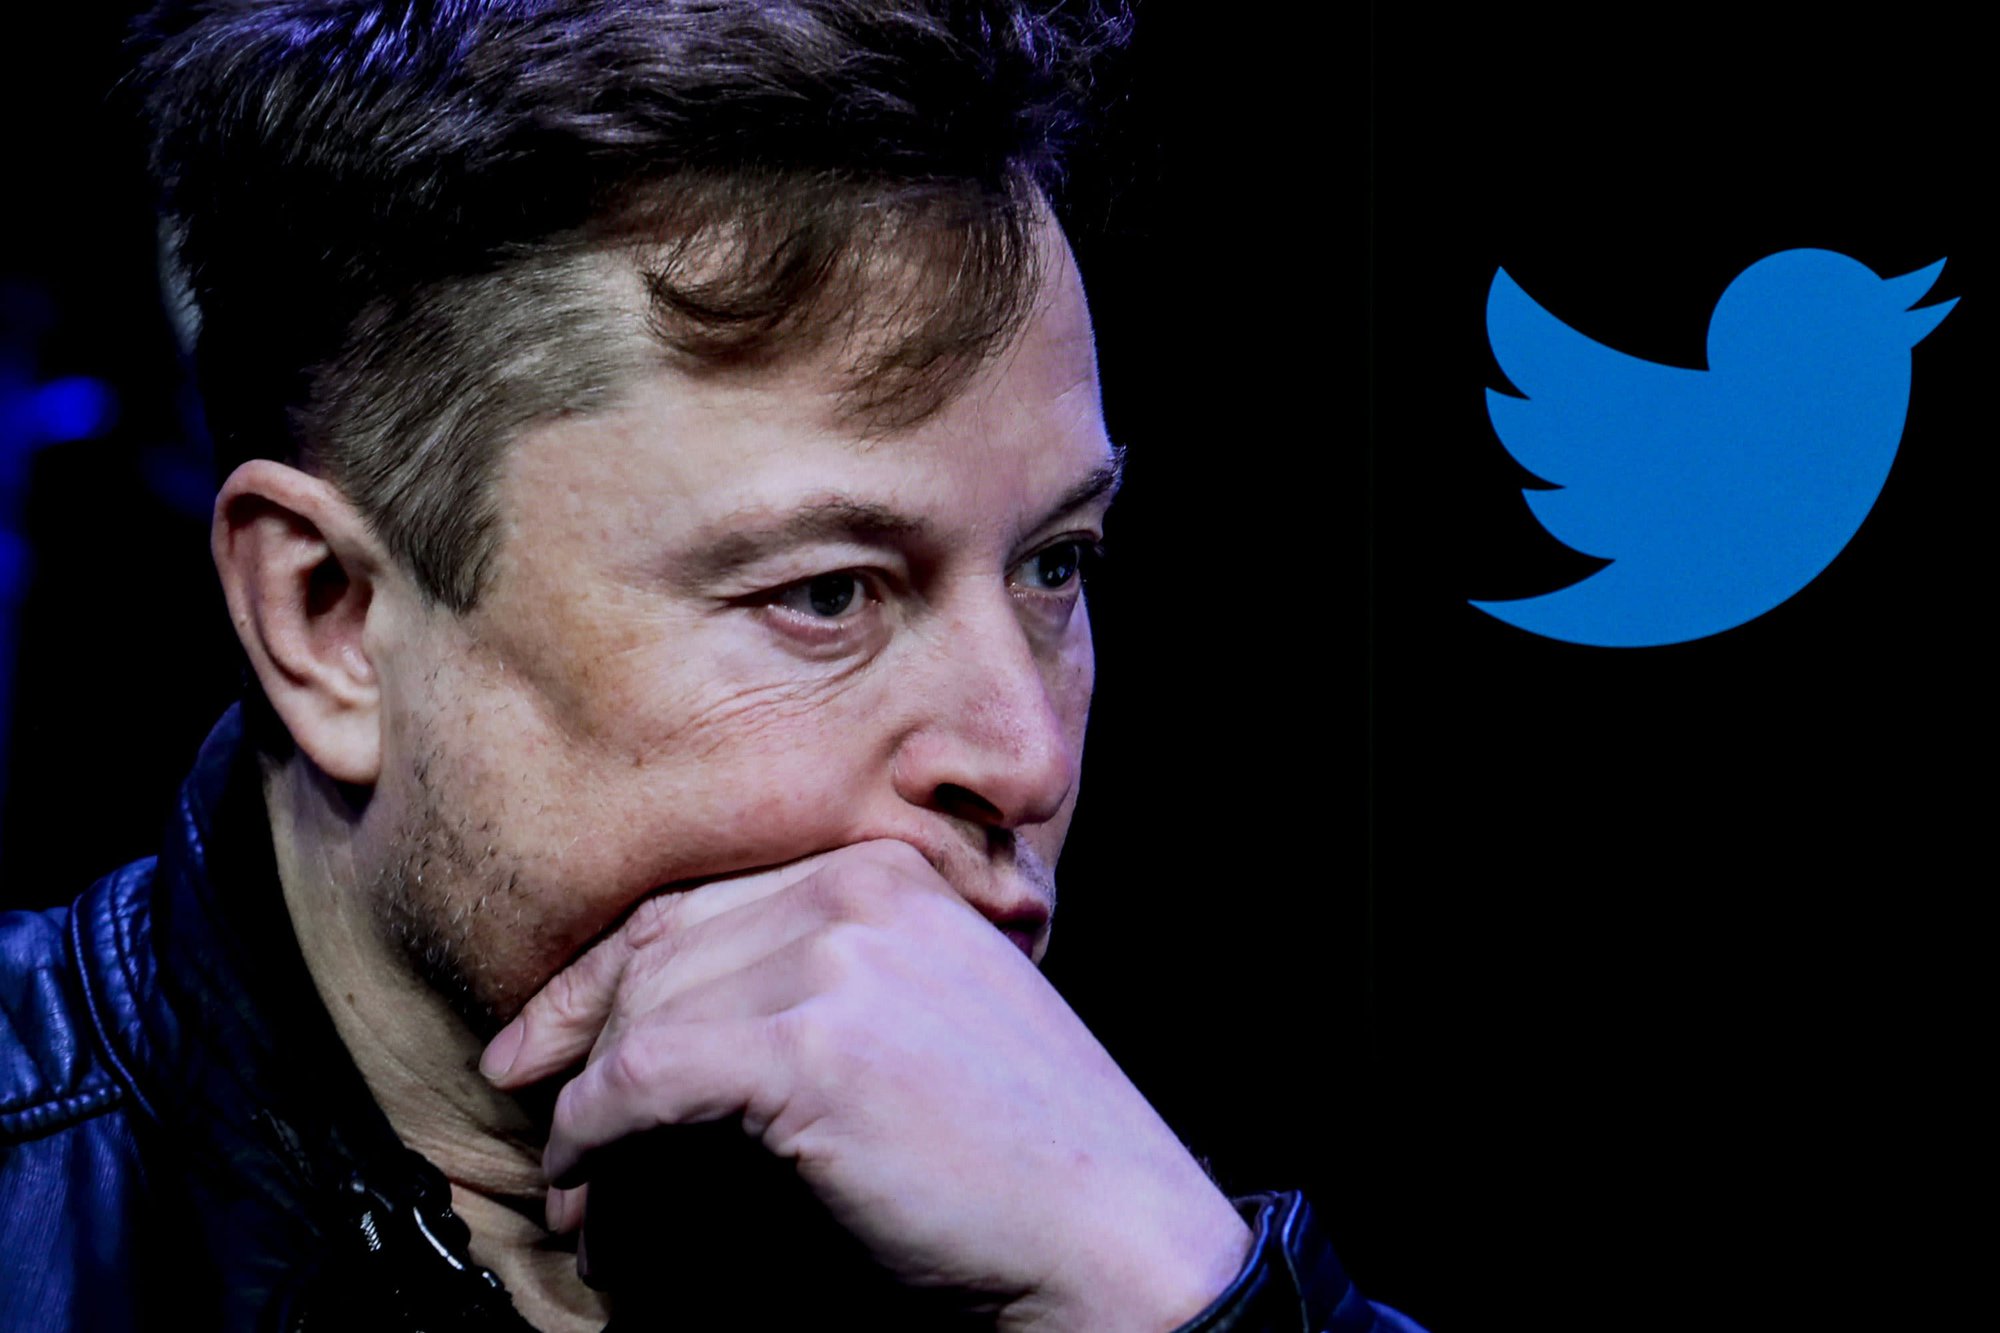 Thỏa thuận trị giá 44 tỷ đô la của Musk để mua nền tảng truyền thông xã hội đã kết thúc vào cuối tháng 10. Và mới đây, một số nhân vật của công chúng đã bày tỏ lo ngại về những gì tỷ phú sẽ làm với nền tảng này. Ảnh: @AFP.